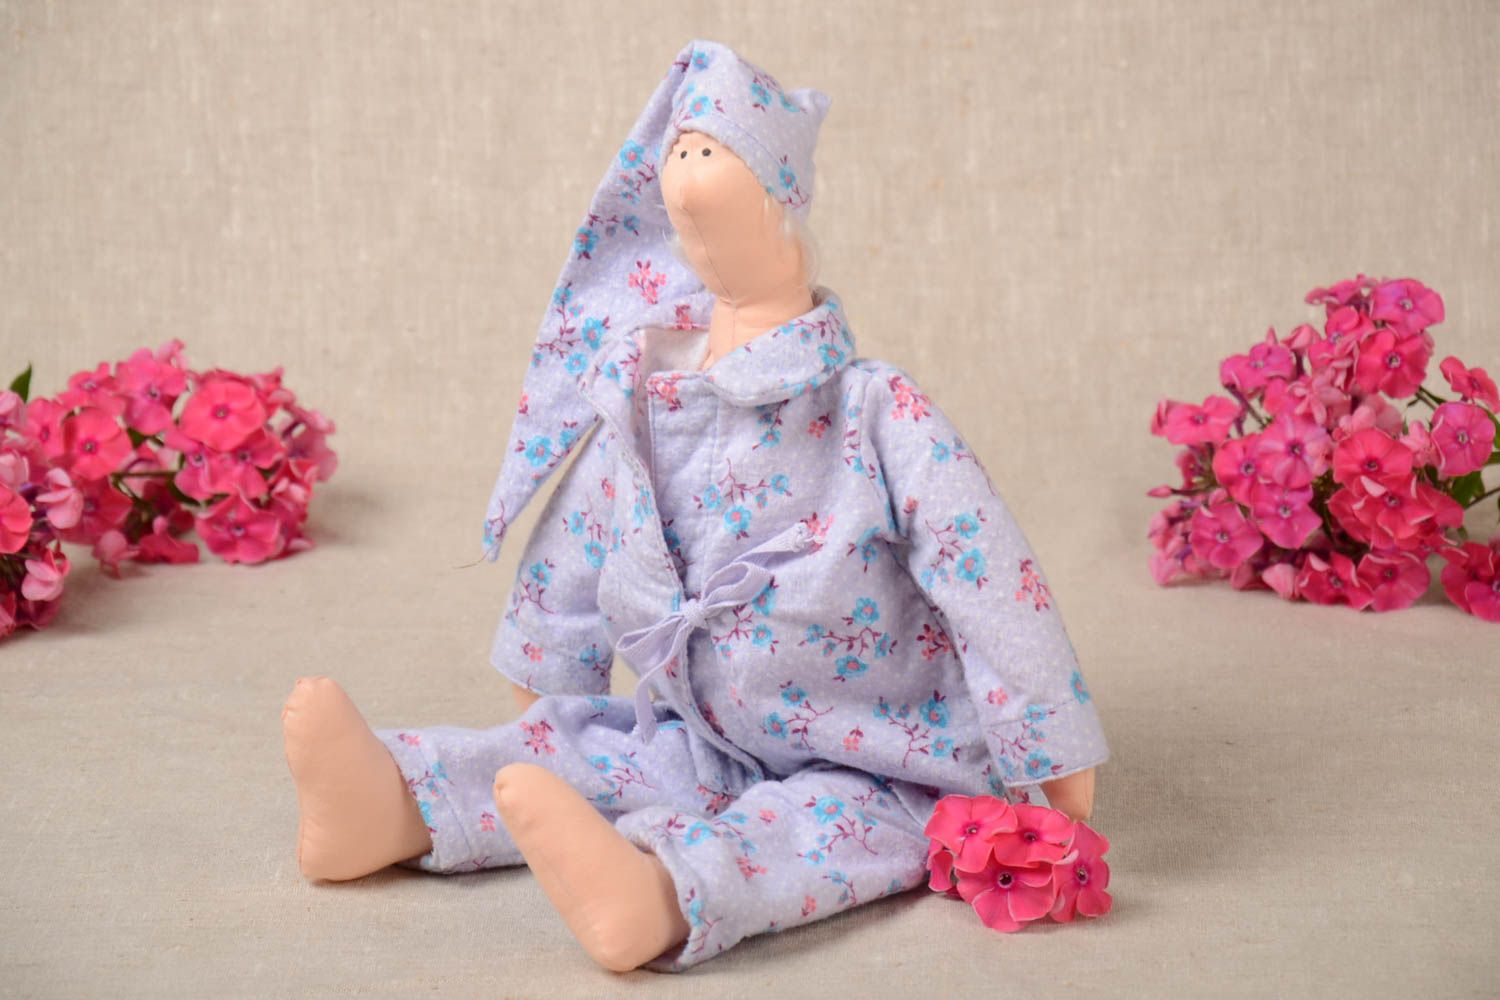 Handmade Stoff Puppe Kinder Spielzeug Geschenk Idee für Haus Dekor aus Baumwolle foto 1